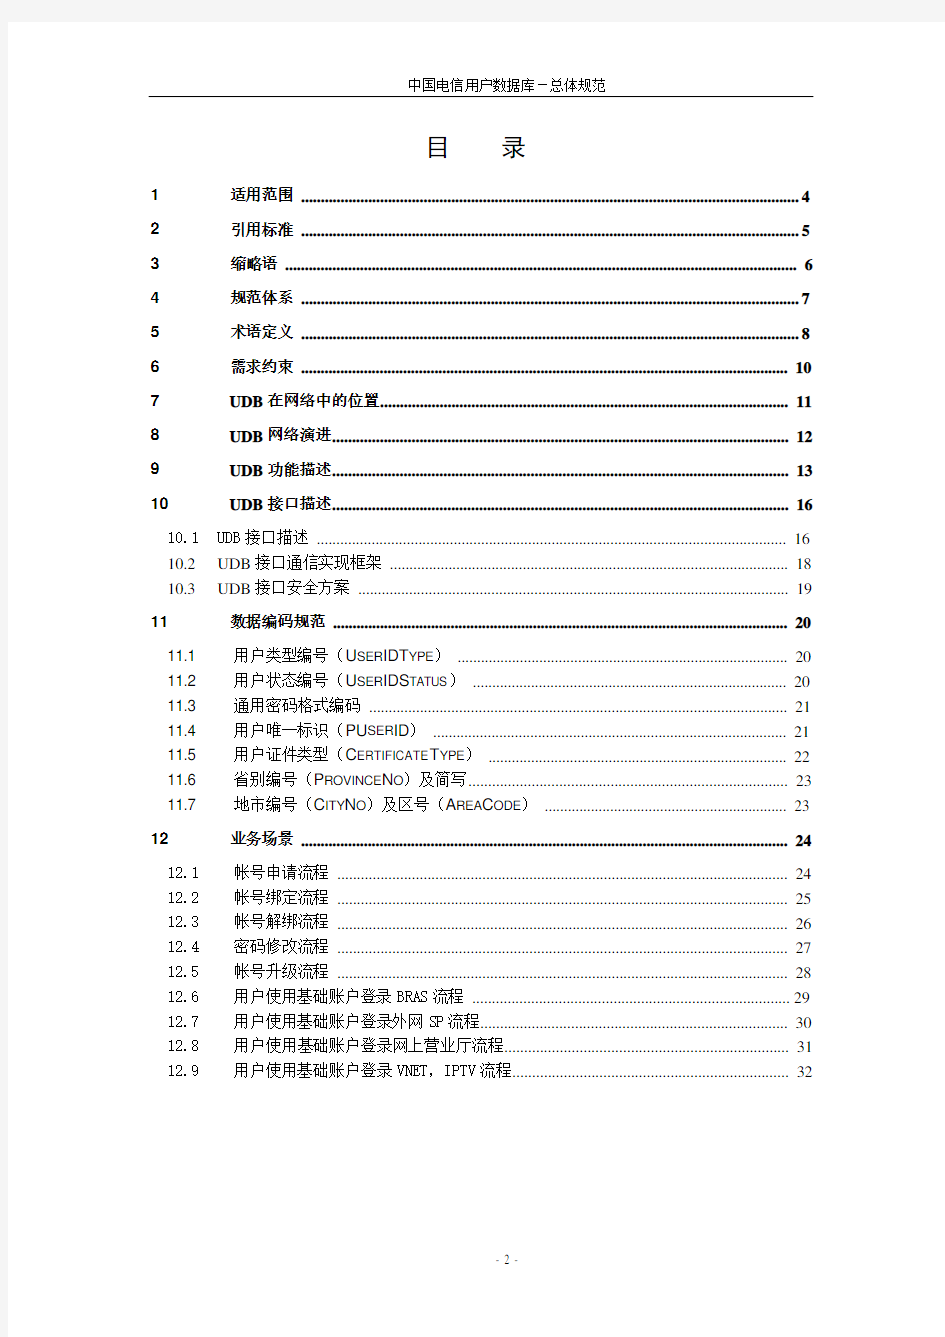 中国电信用户数据库- 总体规范 V1.0